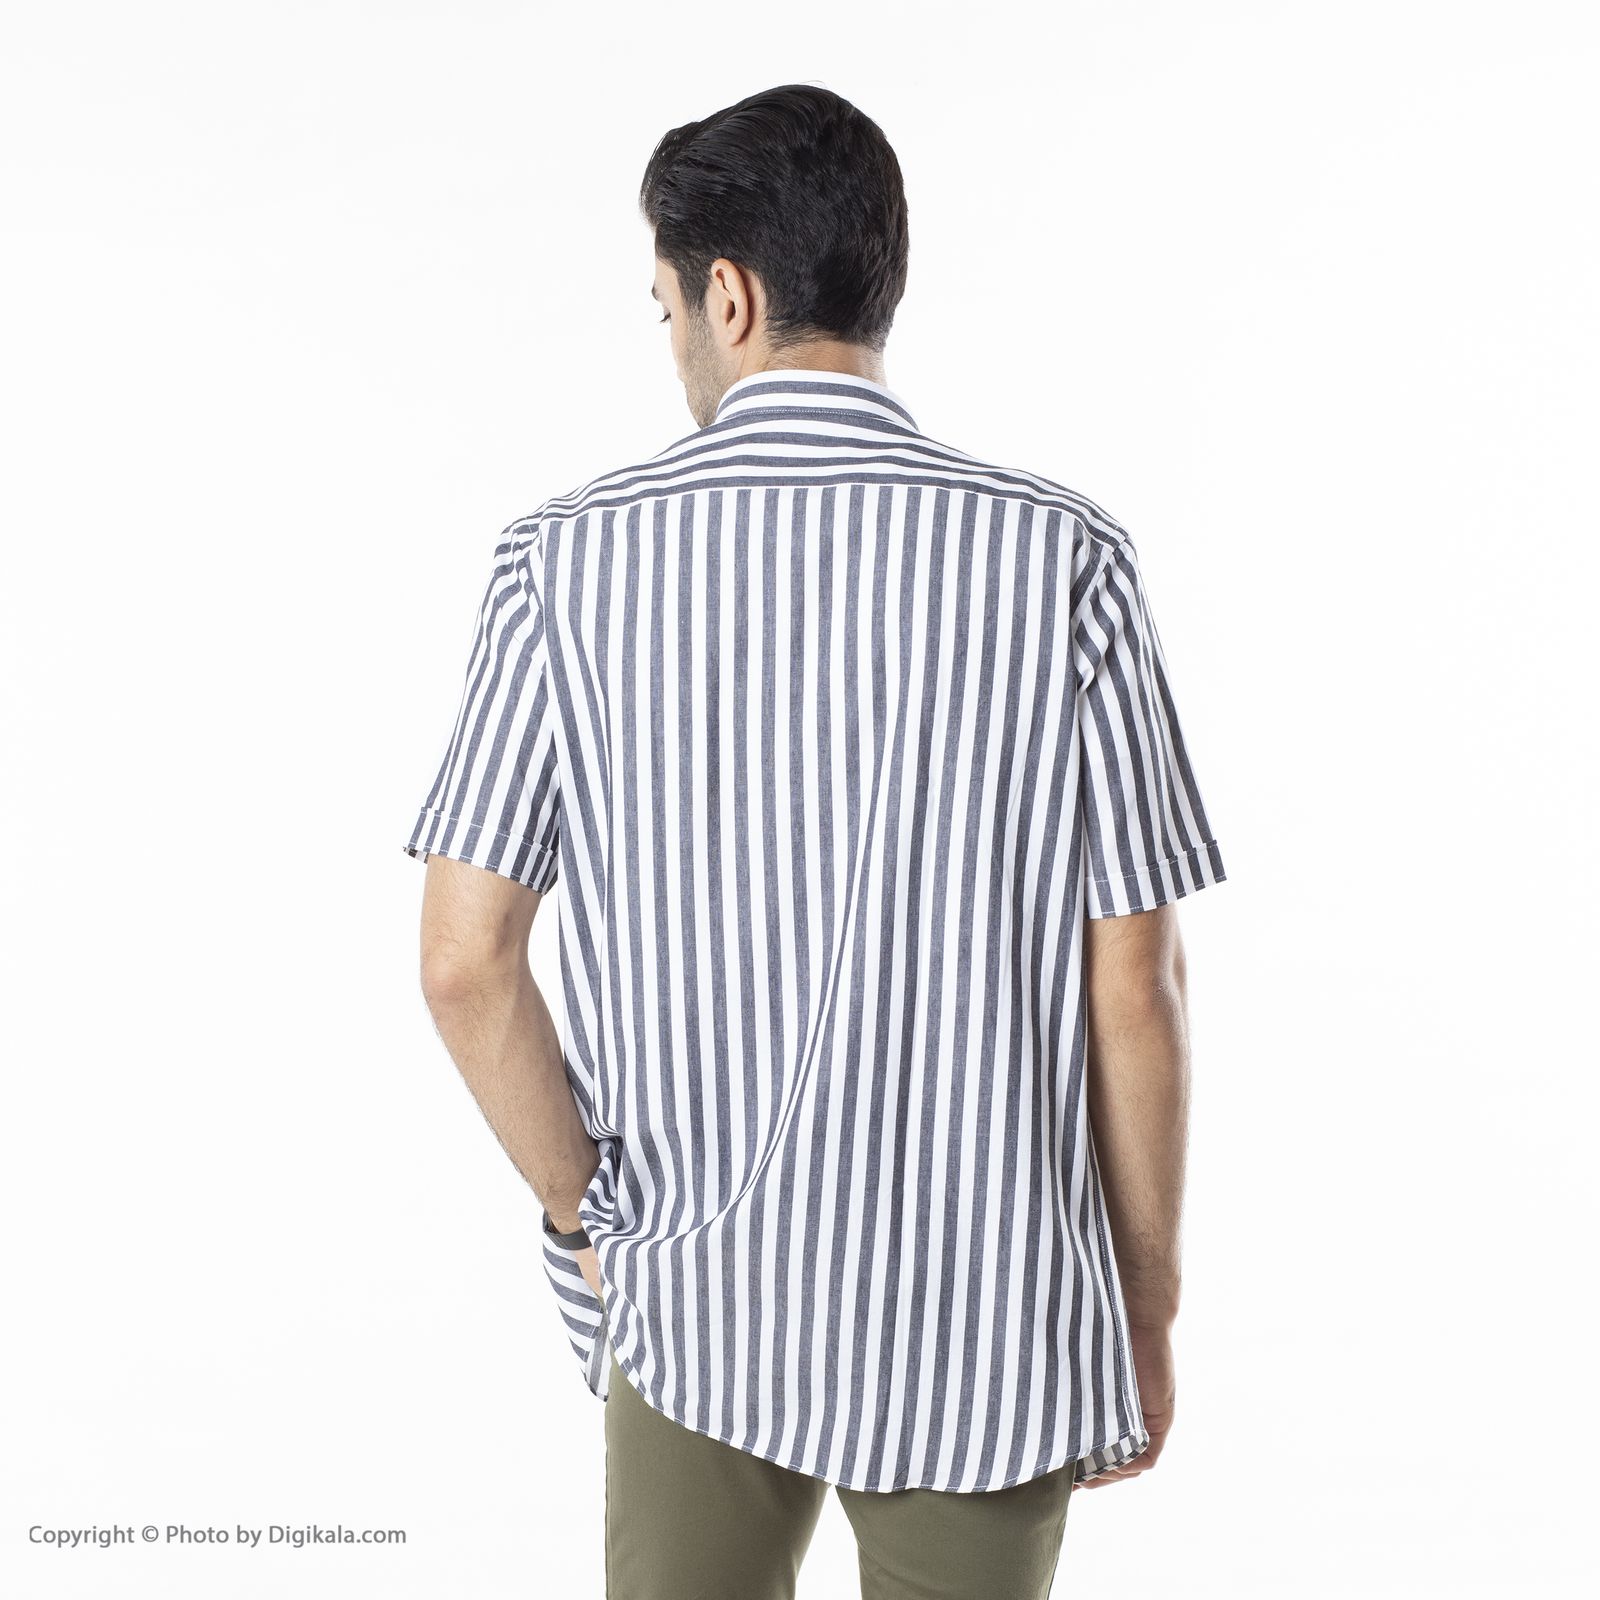 پیراهن مردانه اکزاترس مدل P012002188360010-188 -  - 9